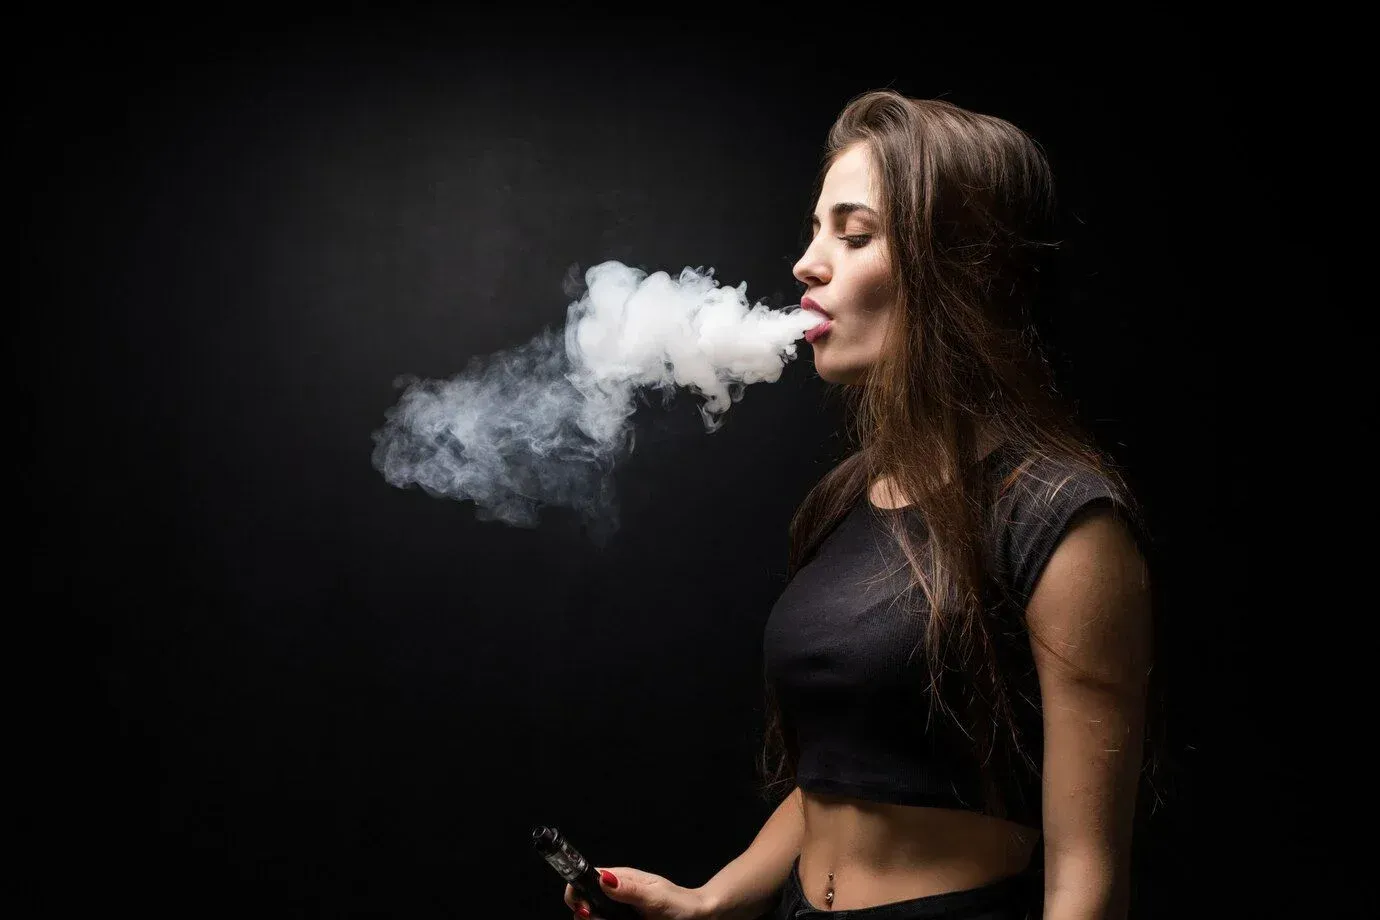 Tandarts waarschuwt voor groot gevaar van e-sigaretten: "Je verliest het helemaal"